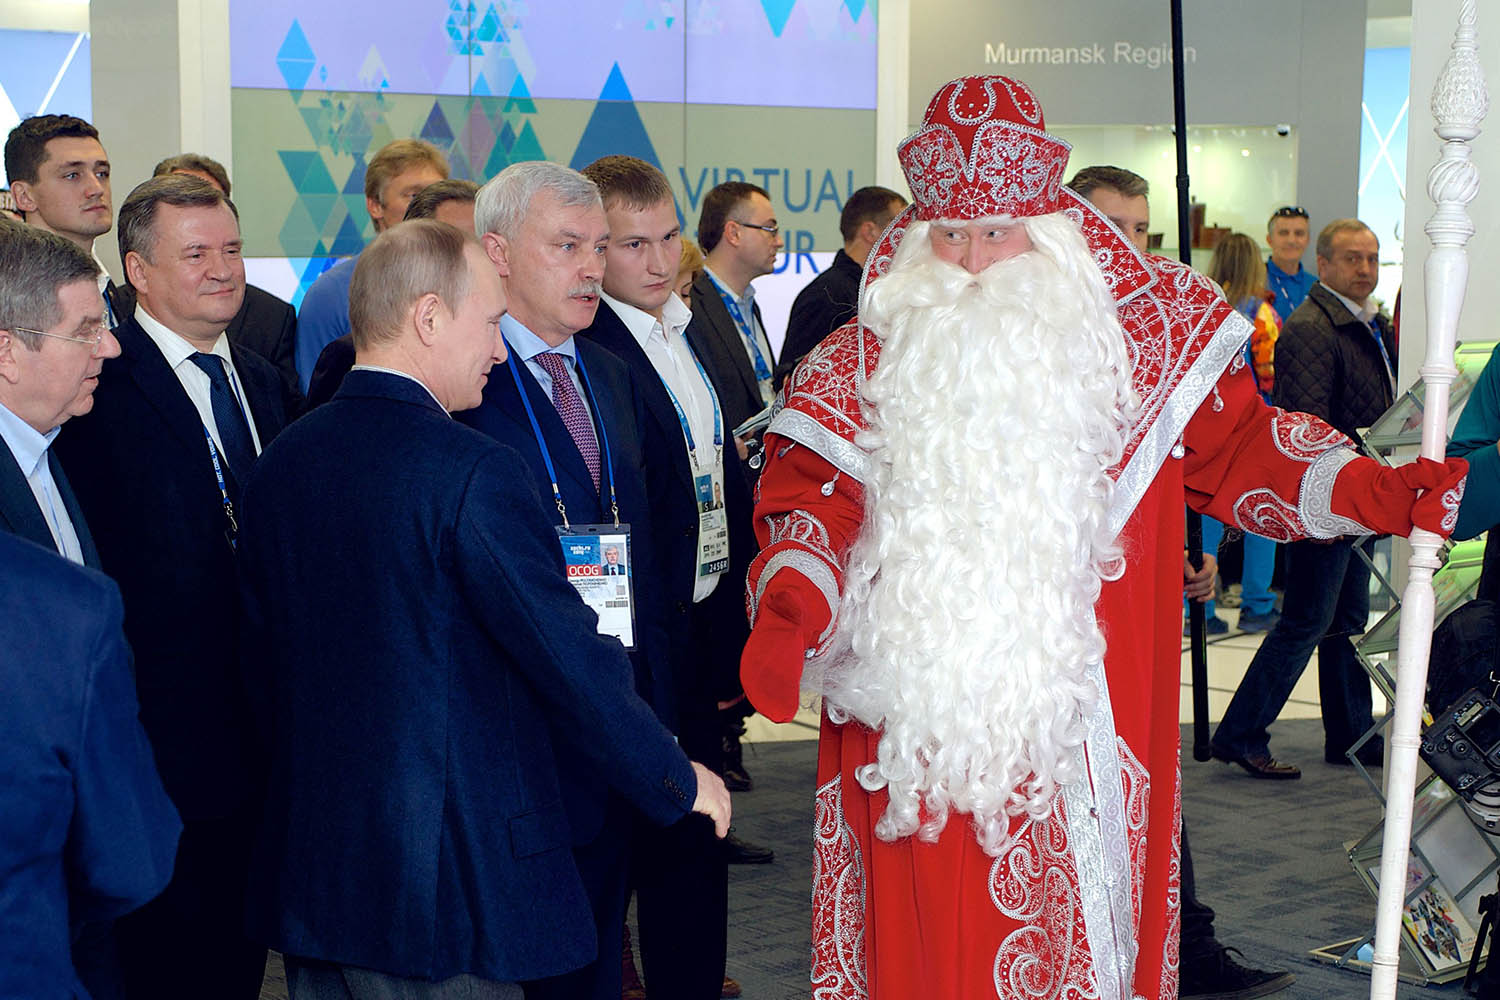 Поздравление Дедушке От Путина